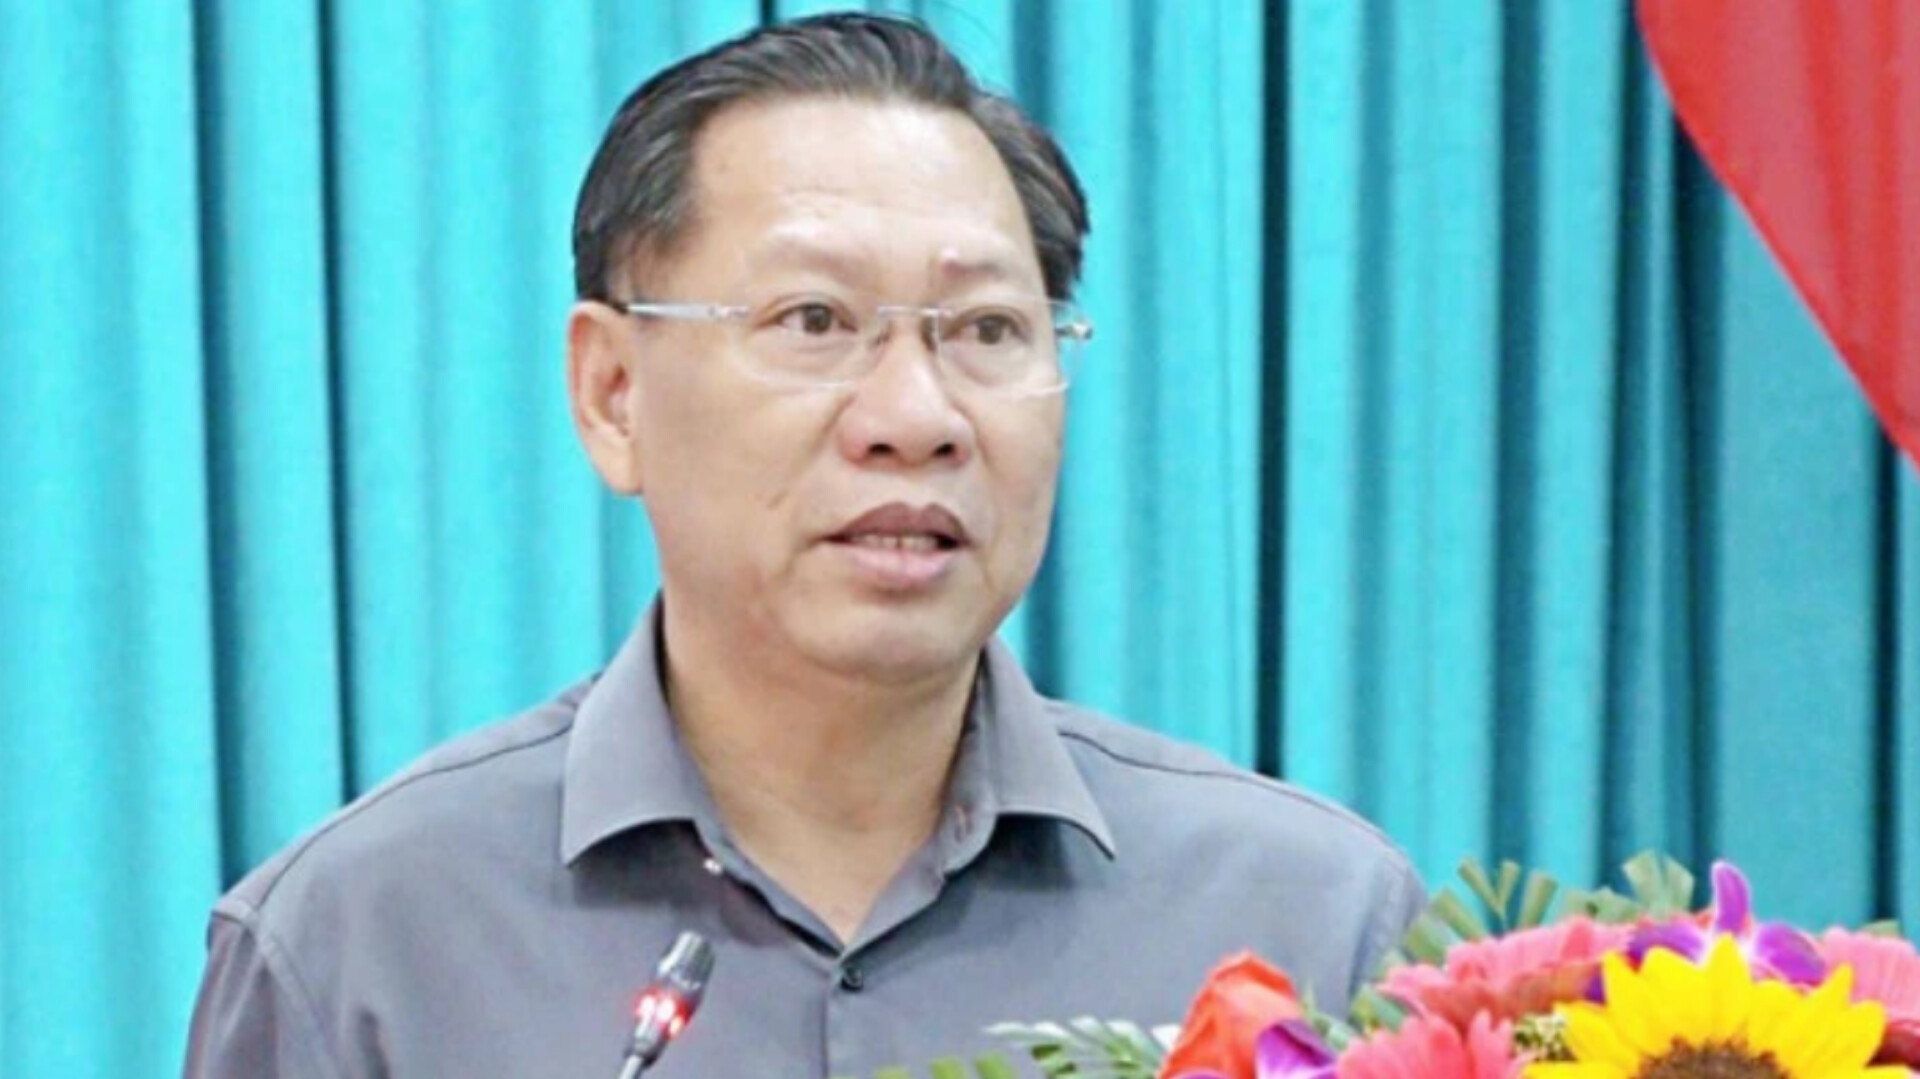 Toàn cảnh vụ Chủ tịch An Giang bị bắt liên quan đường dây khai thác cát lậu - Ảnh 2.